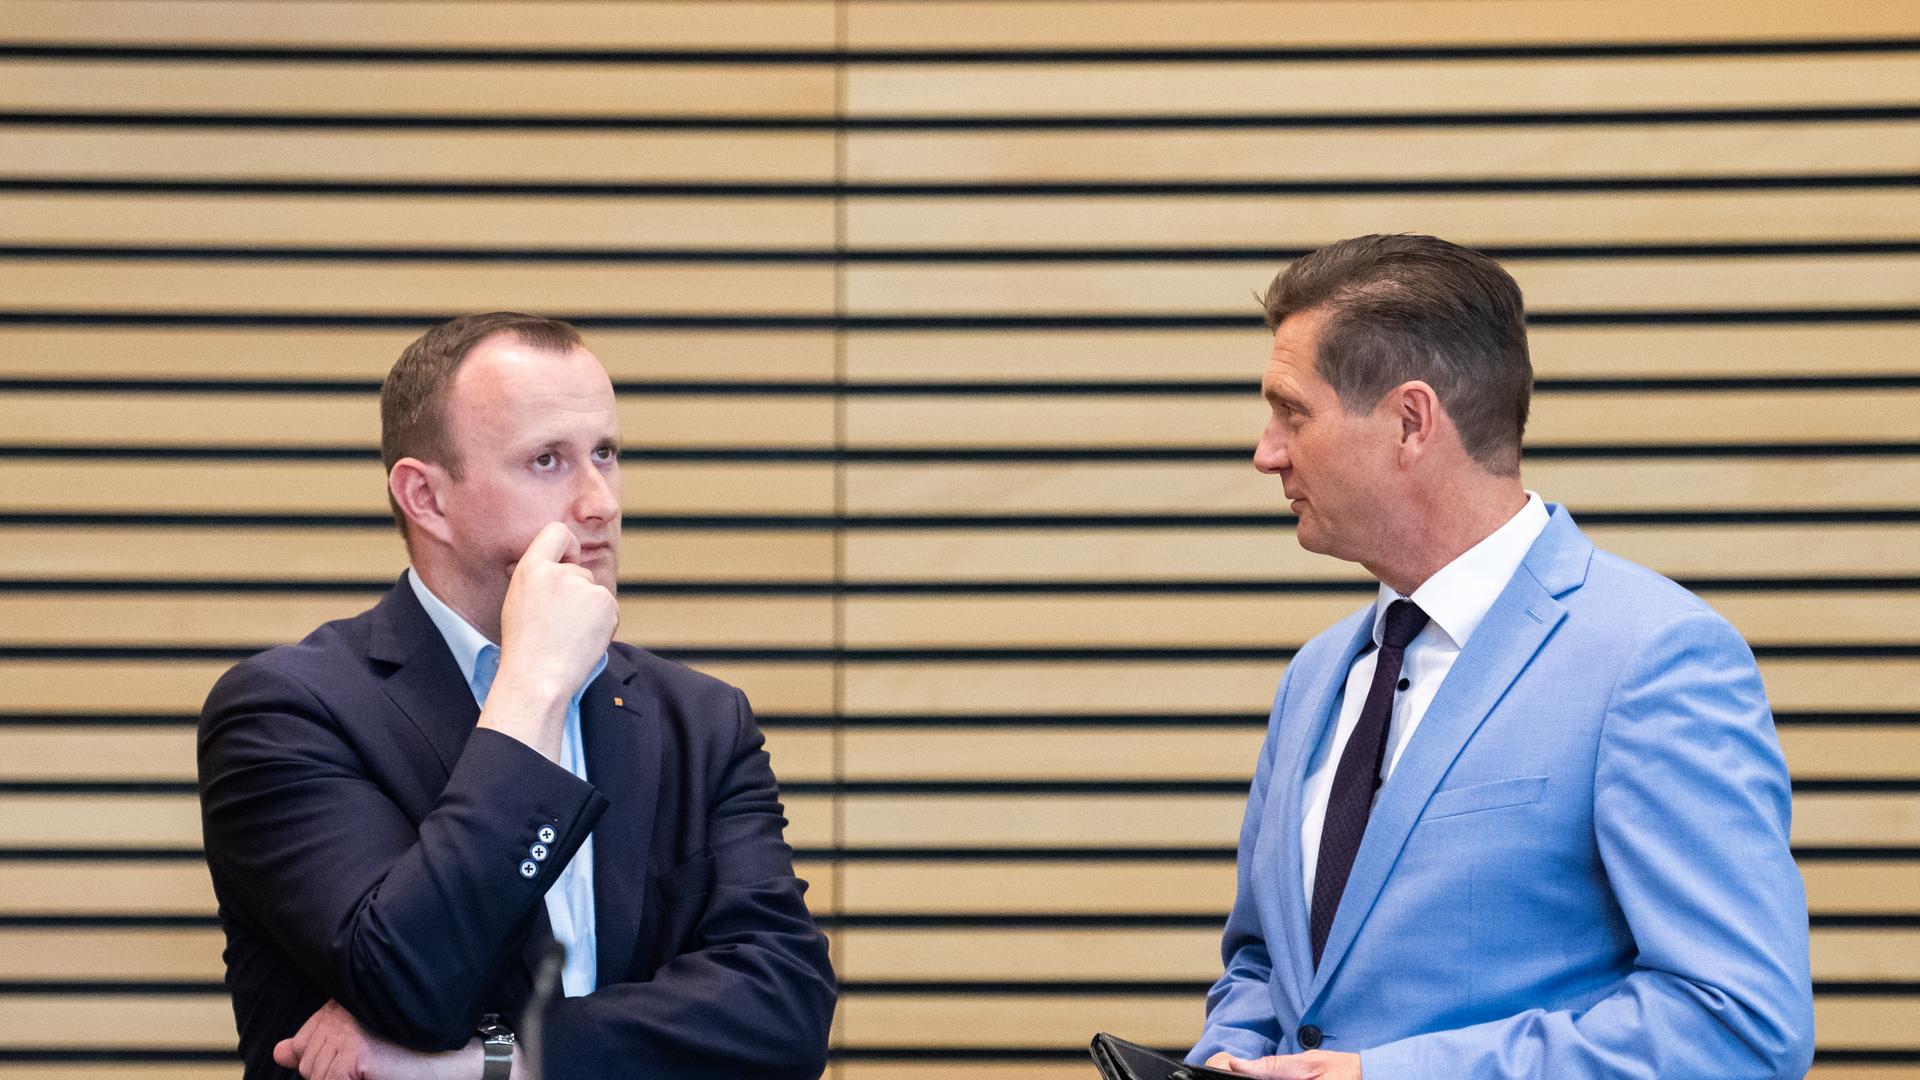 Im Gespräch: Christian Herrgott (CDU, links) mit AfD-Herausforderer Uwe Thrum (AfD) im Thüringer Landtag. Herrgott trägt einen dunklen Anzug, er schaut nachdenklich. Thrum hält eine Brieftasche in der Hand, er trägt ein hellblaues Sakko. 